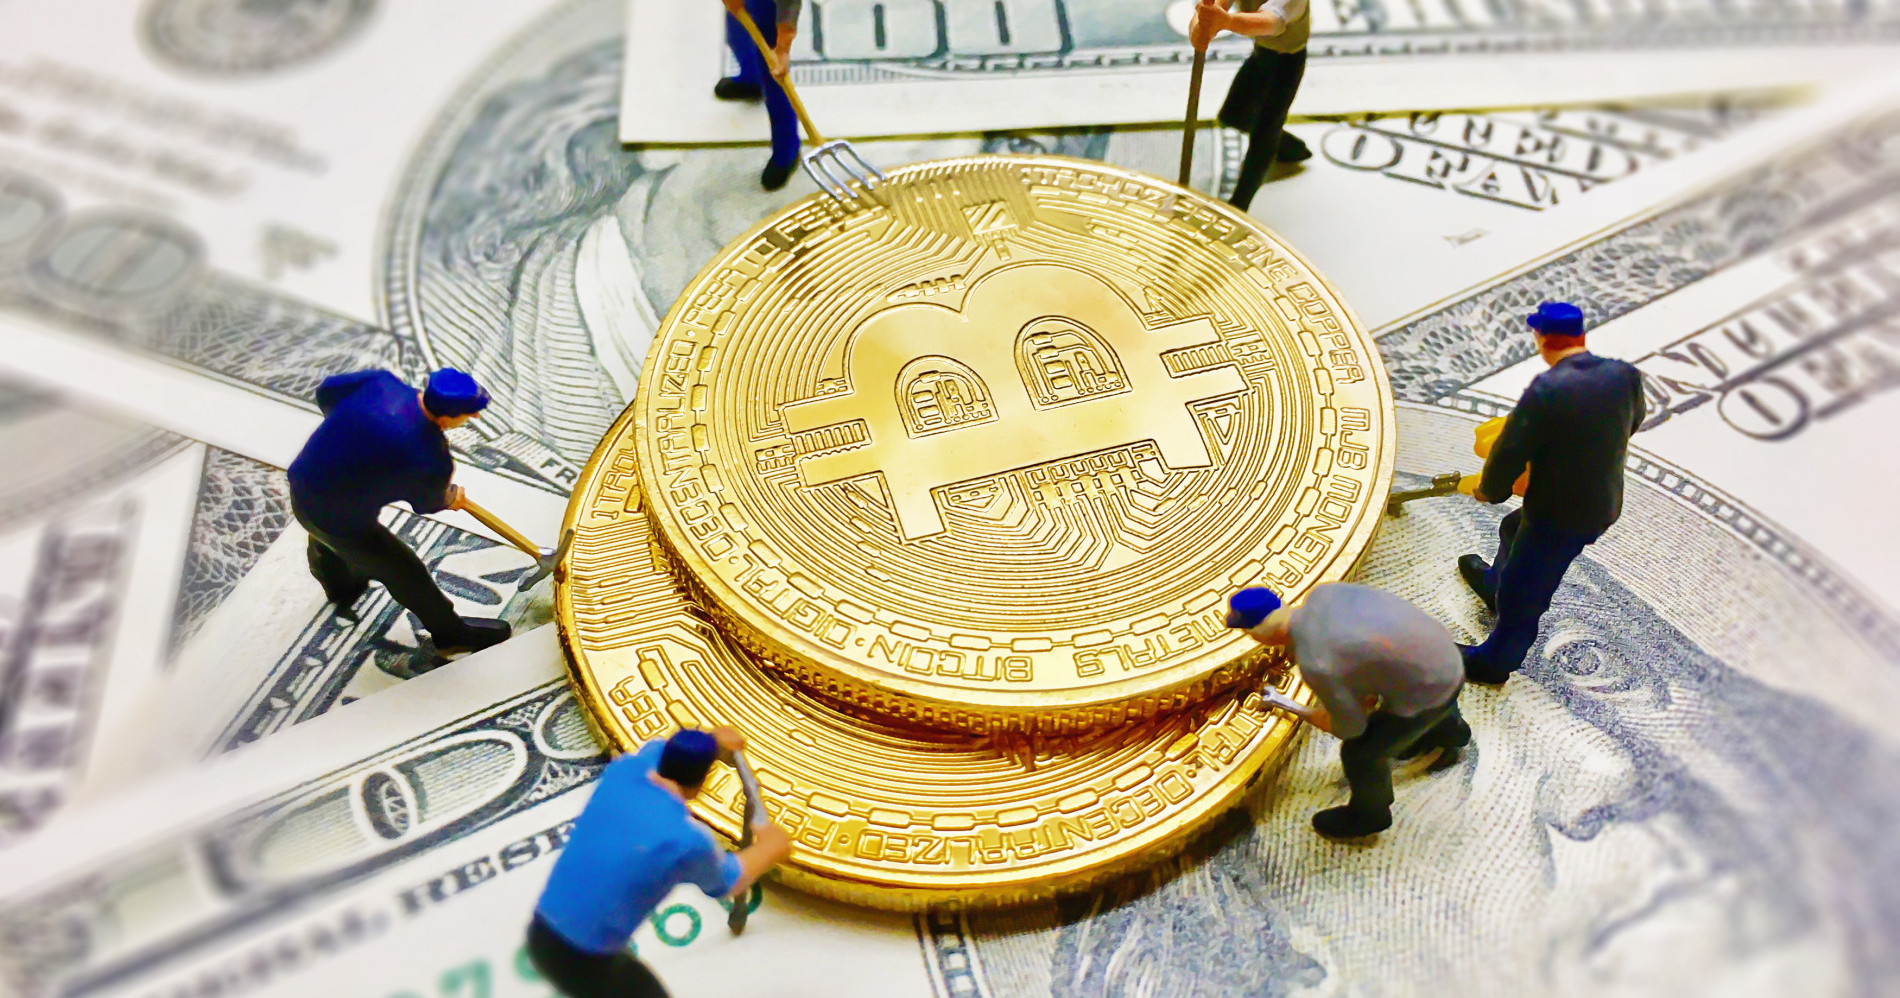 Penambang bitcoin kembali harus mempertimbangkan potensi untung-rugi pasca halving. (Sumber gambar: freepik.com)